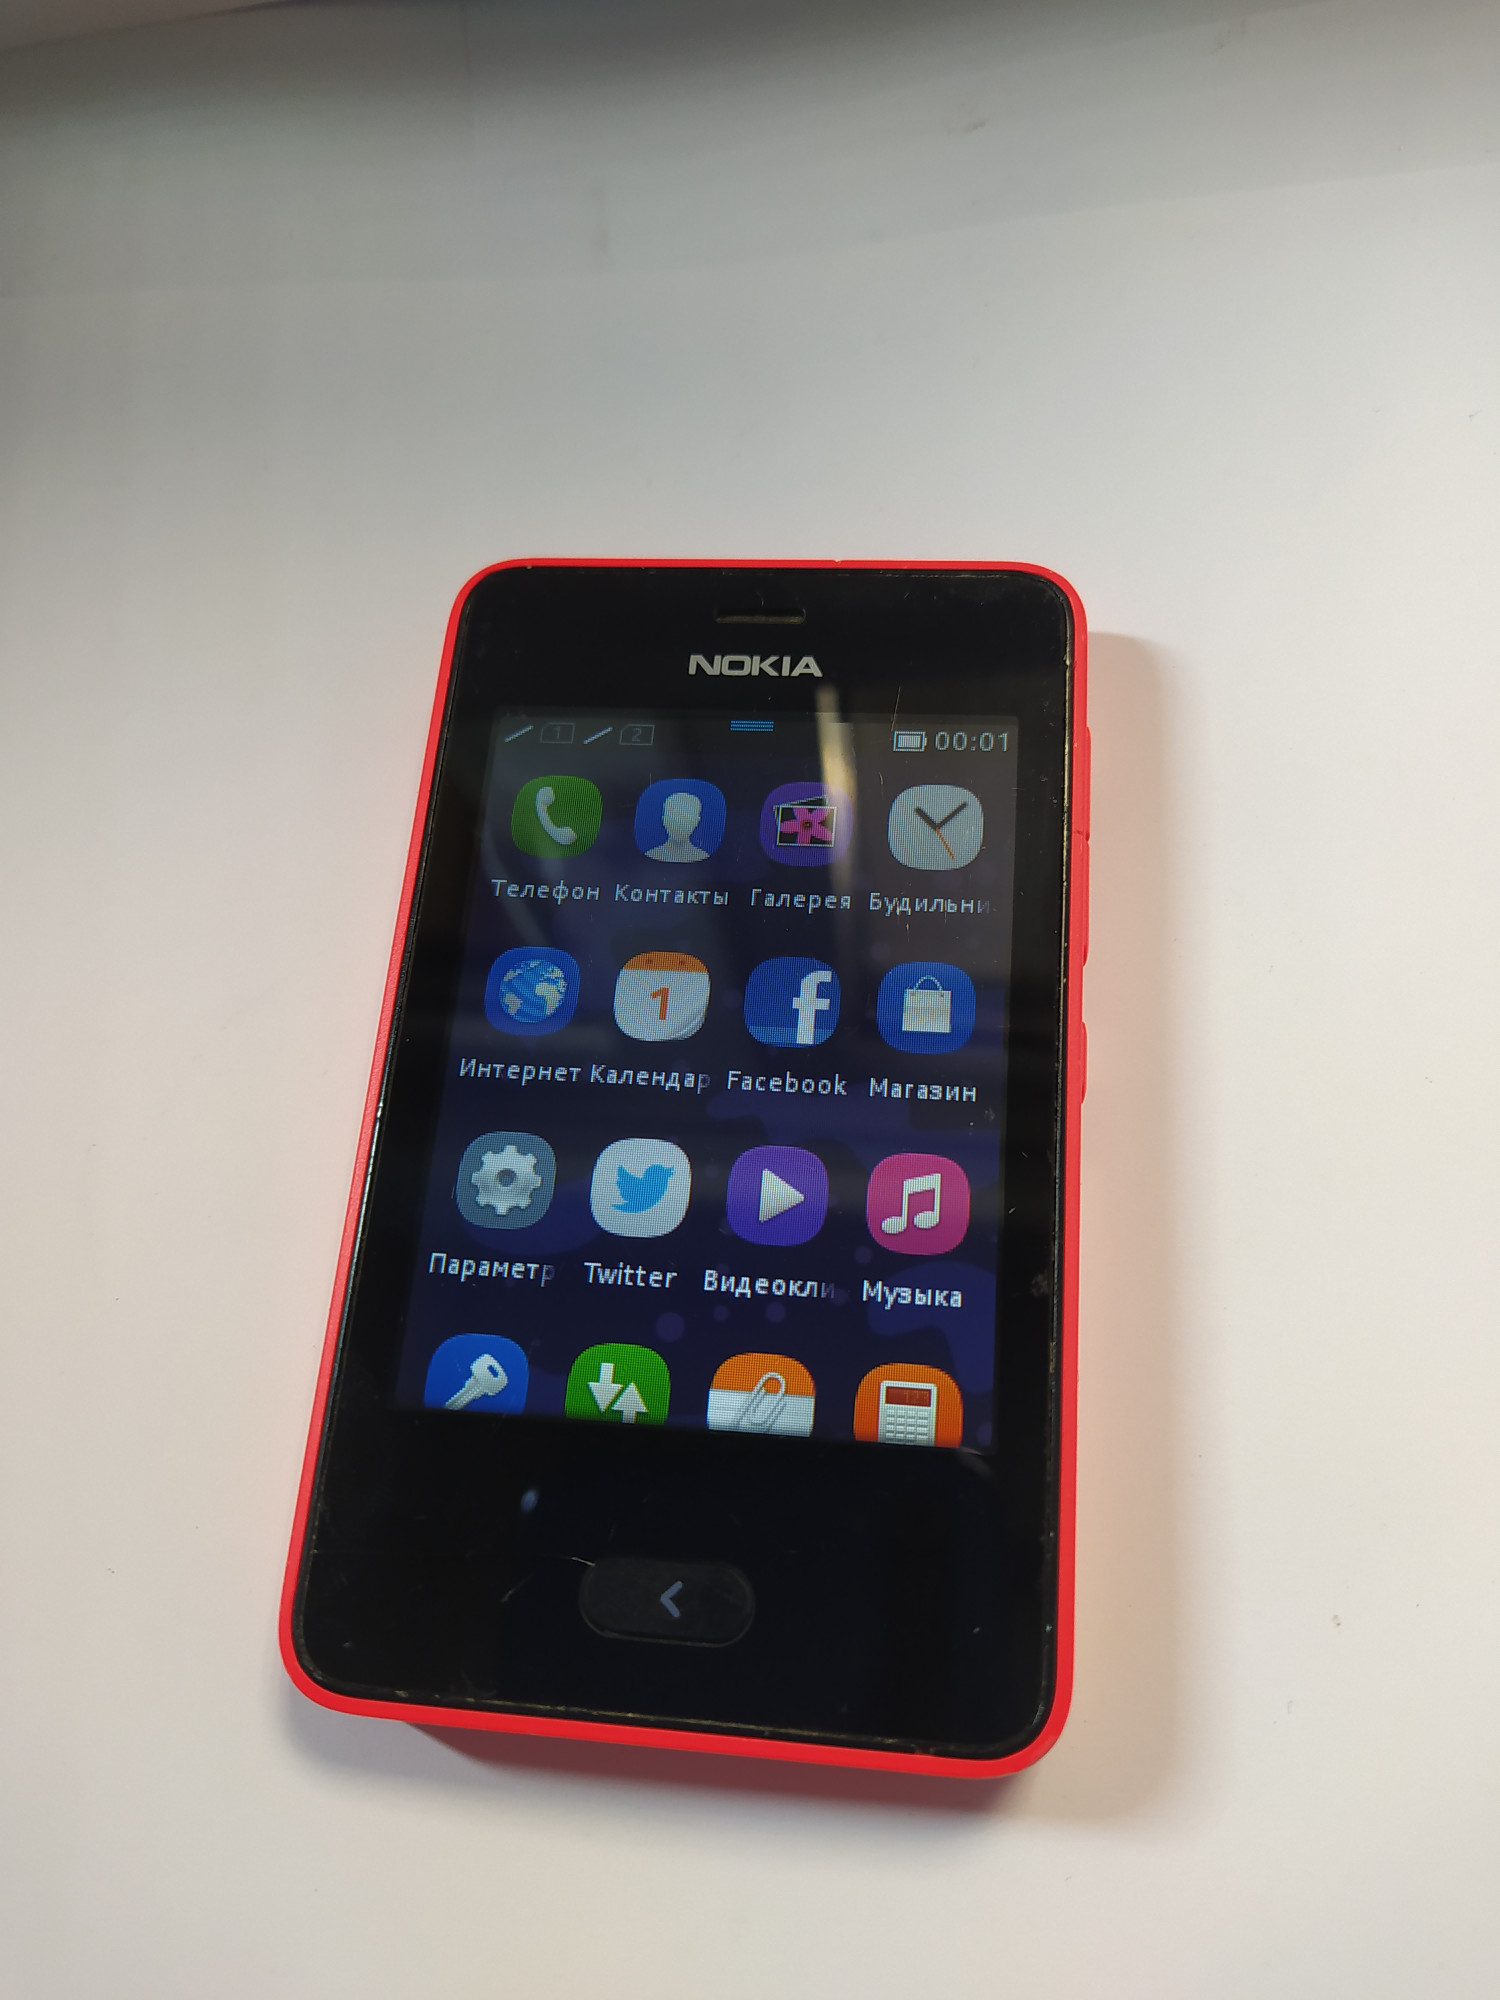 Nokia Asha 501 0